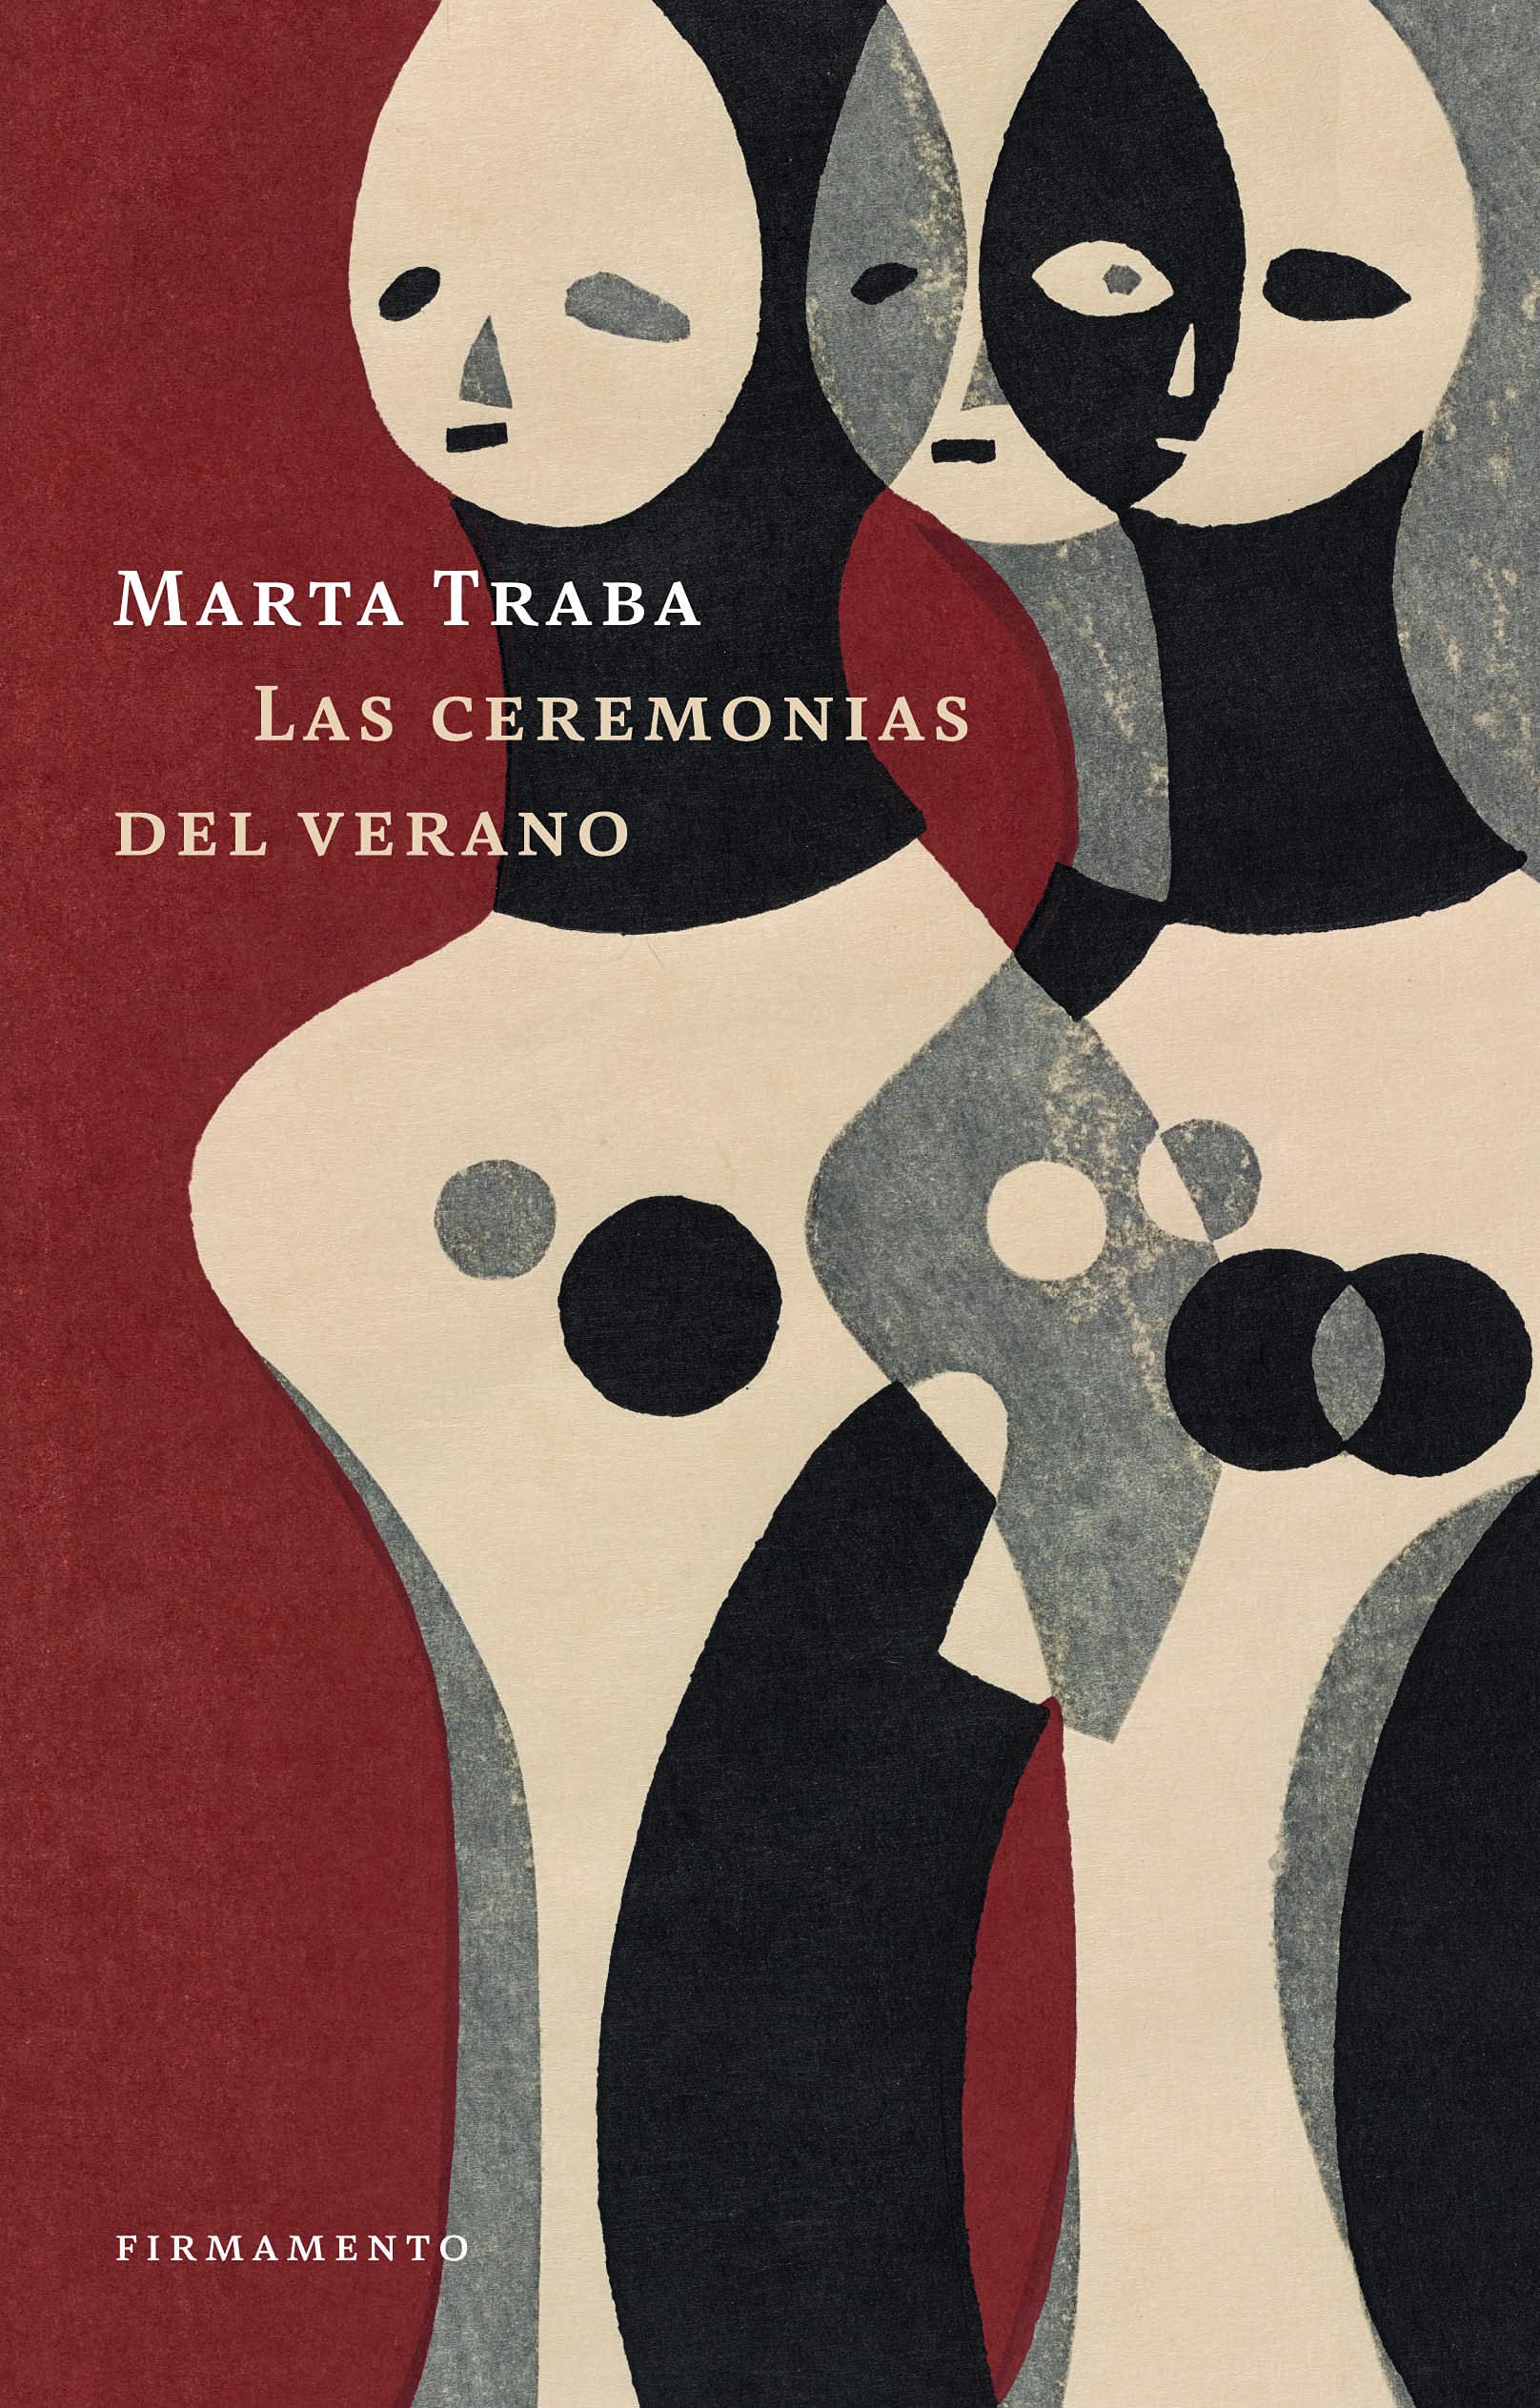 Las ceremonias del verano, de Marta Traba